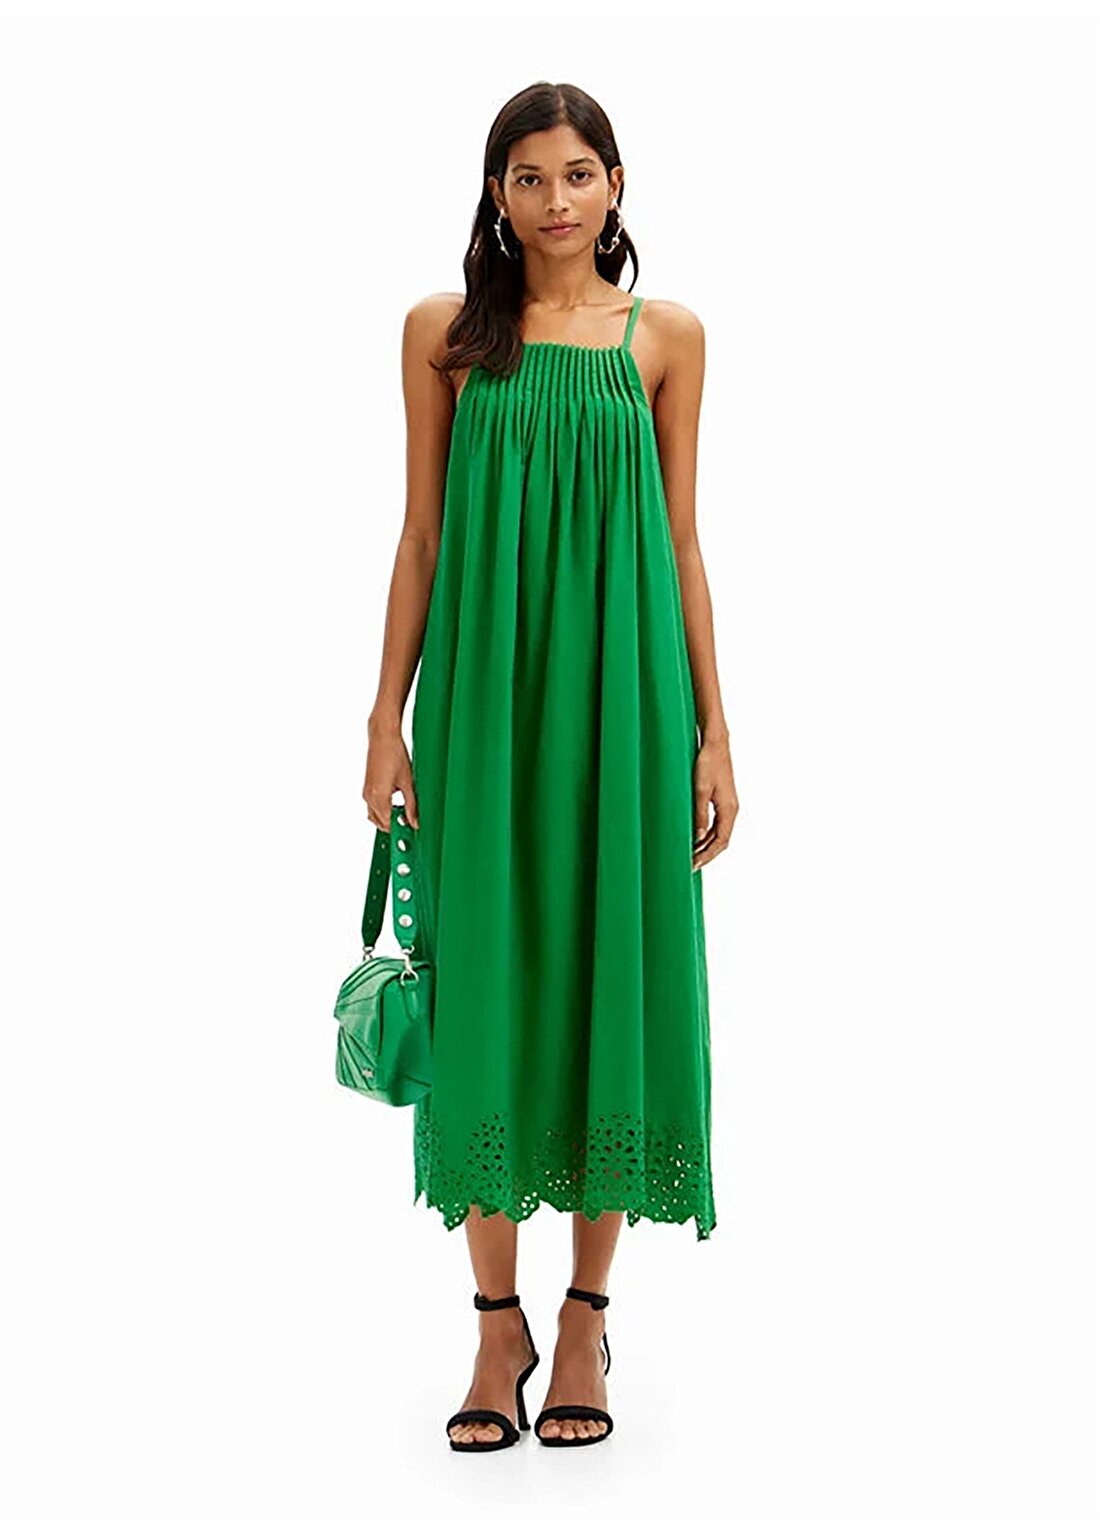 Desigual Kare Yaka Düz Yeşil Uzun Kadın Elbise 24SWVW21